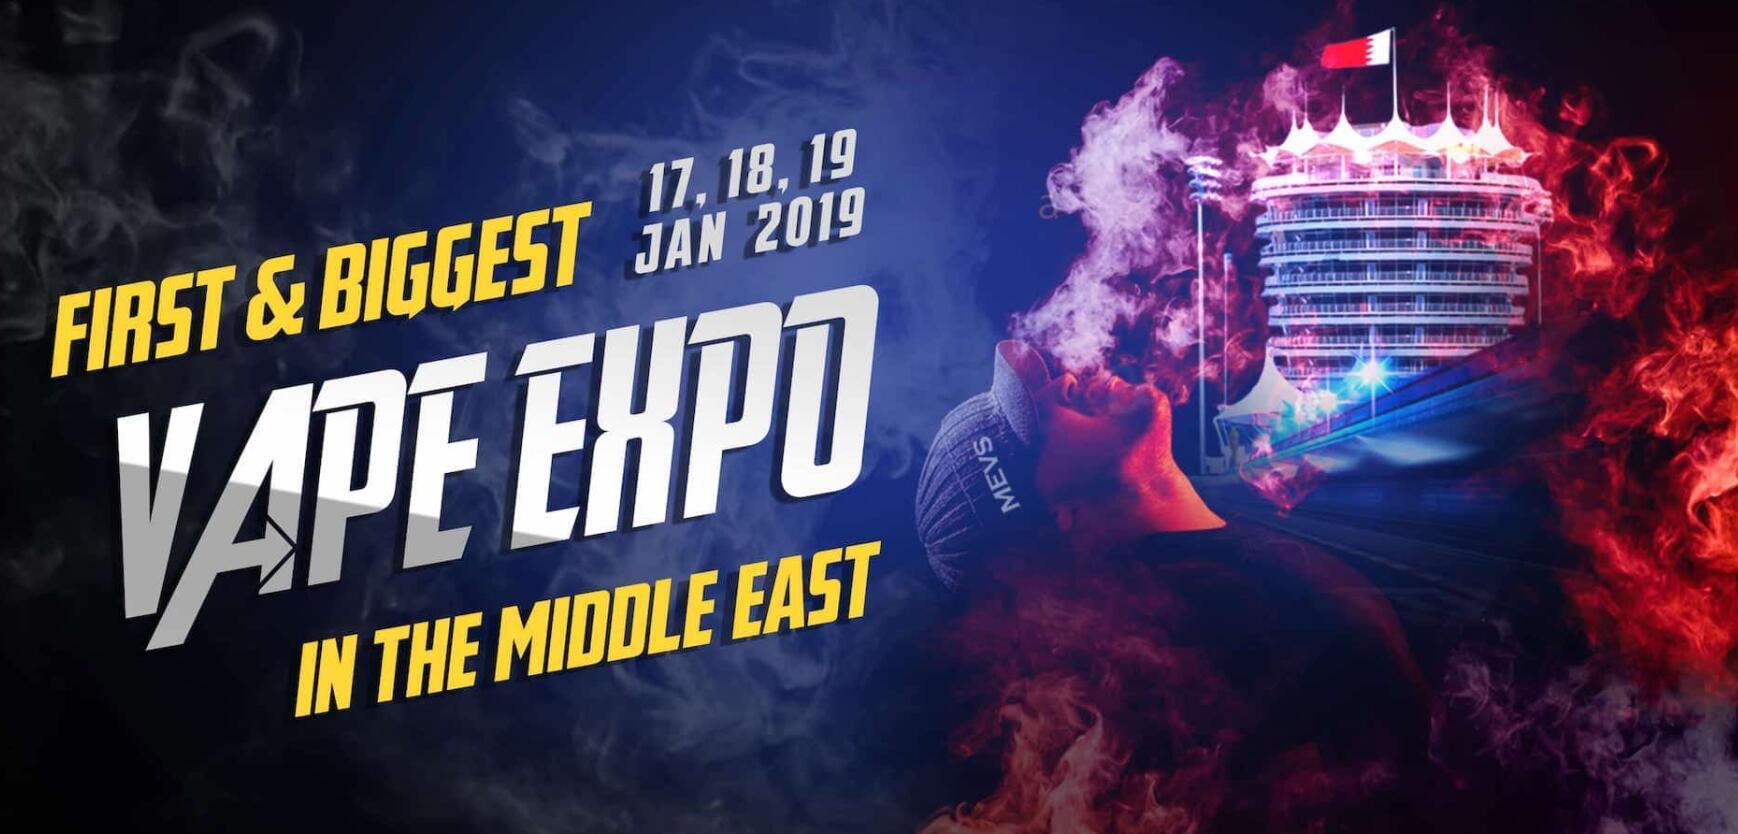 El espectáculo de vapeo de Oriente Medio se llevará a cabo entre el 17 y el 19 de enero de 2019